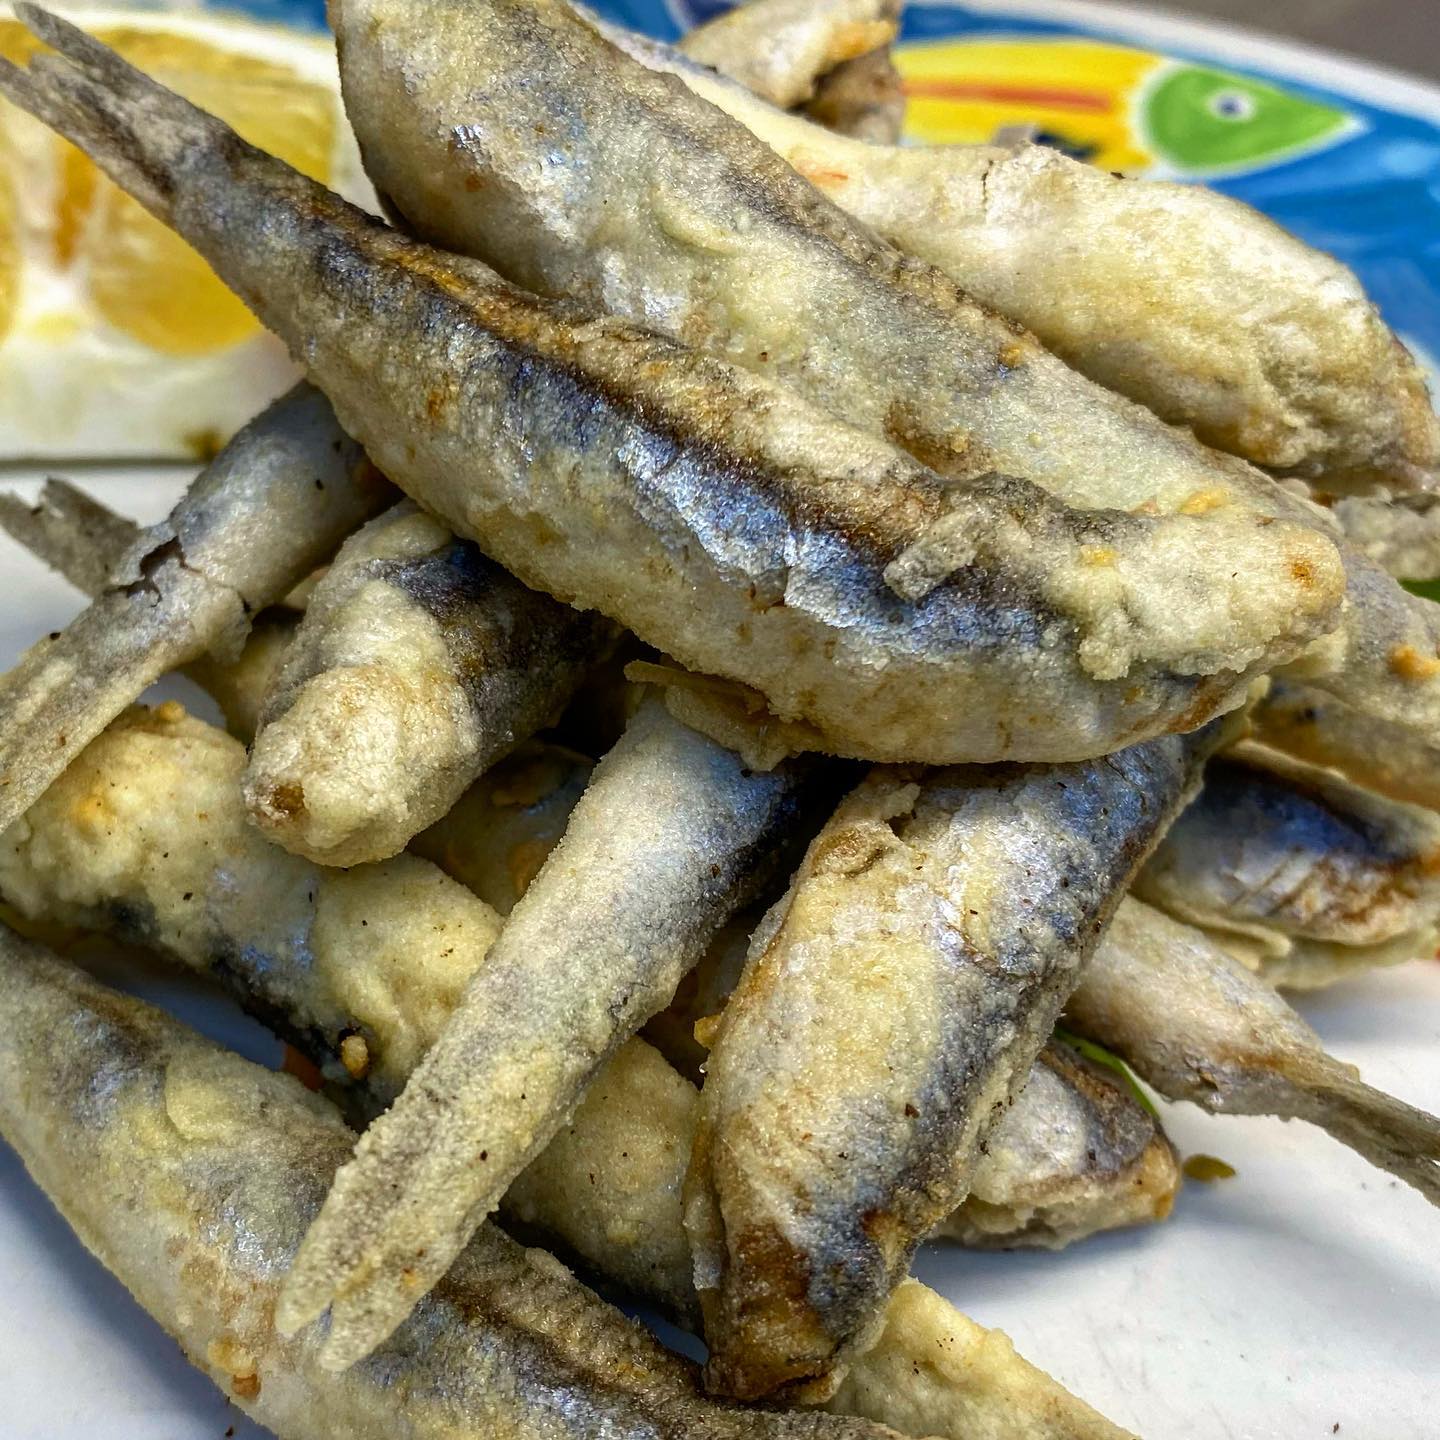 Peggio delle patatine fritte, una tira l’altra ?•••#alicifritte #anchovies #friedanchovies #fish #foodporn #ristoranteida #mercoledì